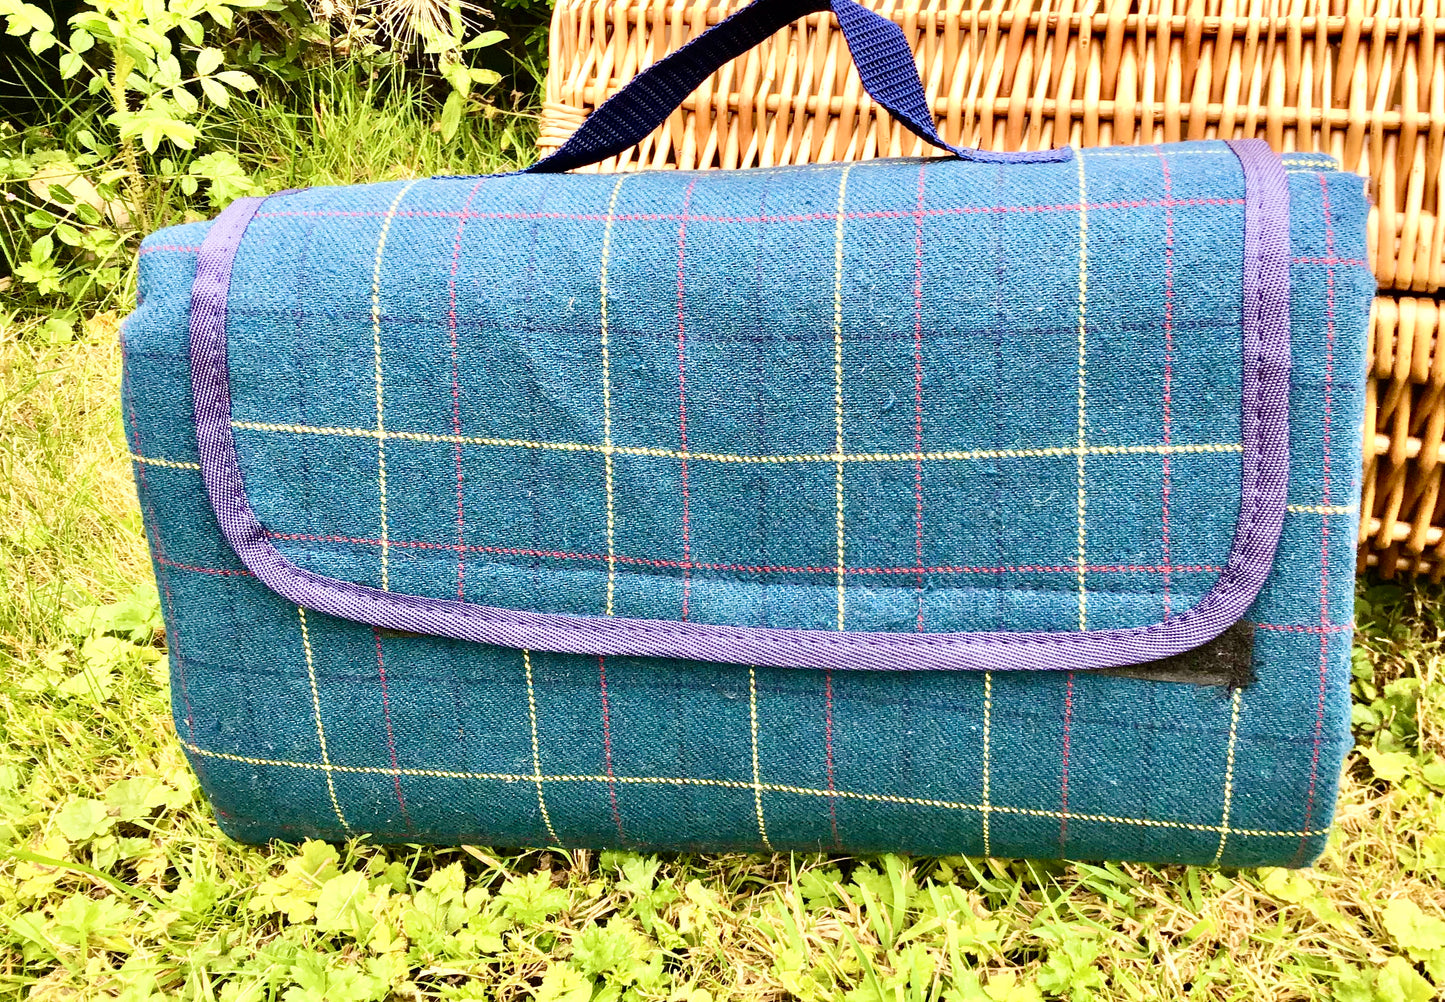 Tweed picnic rugs - waterproof backed